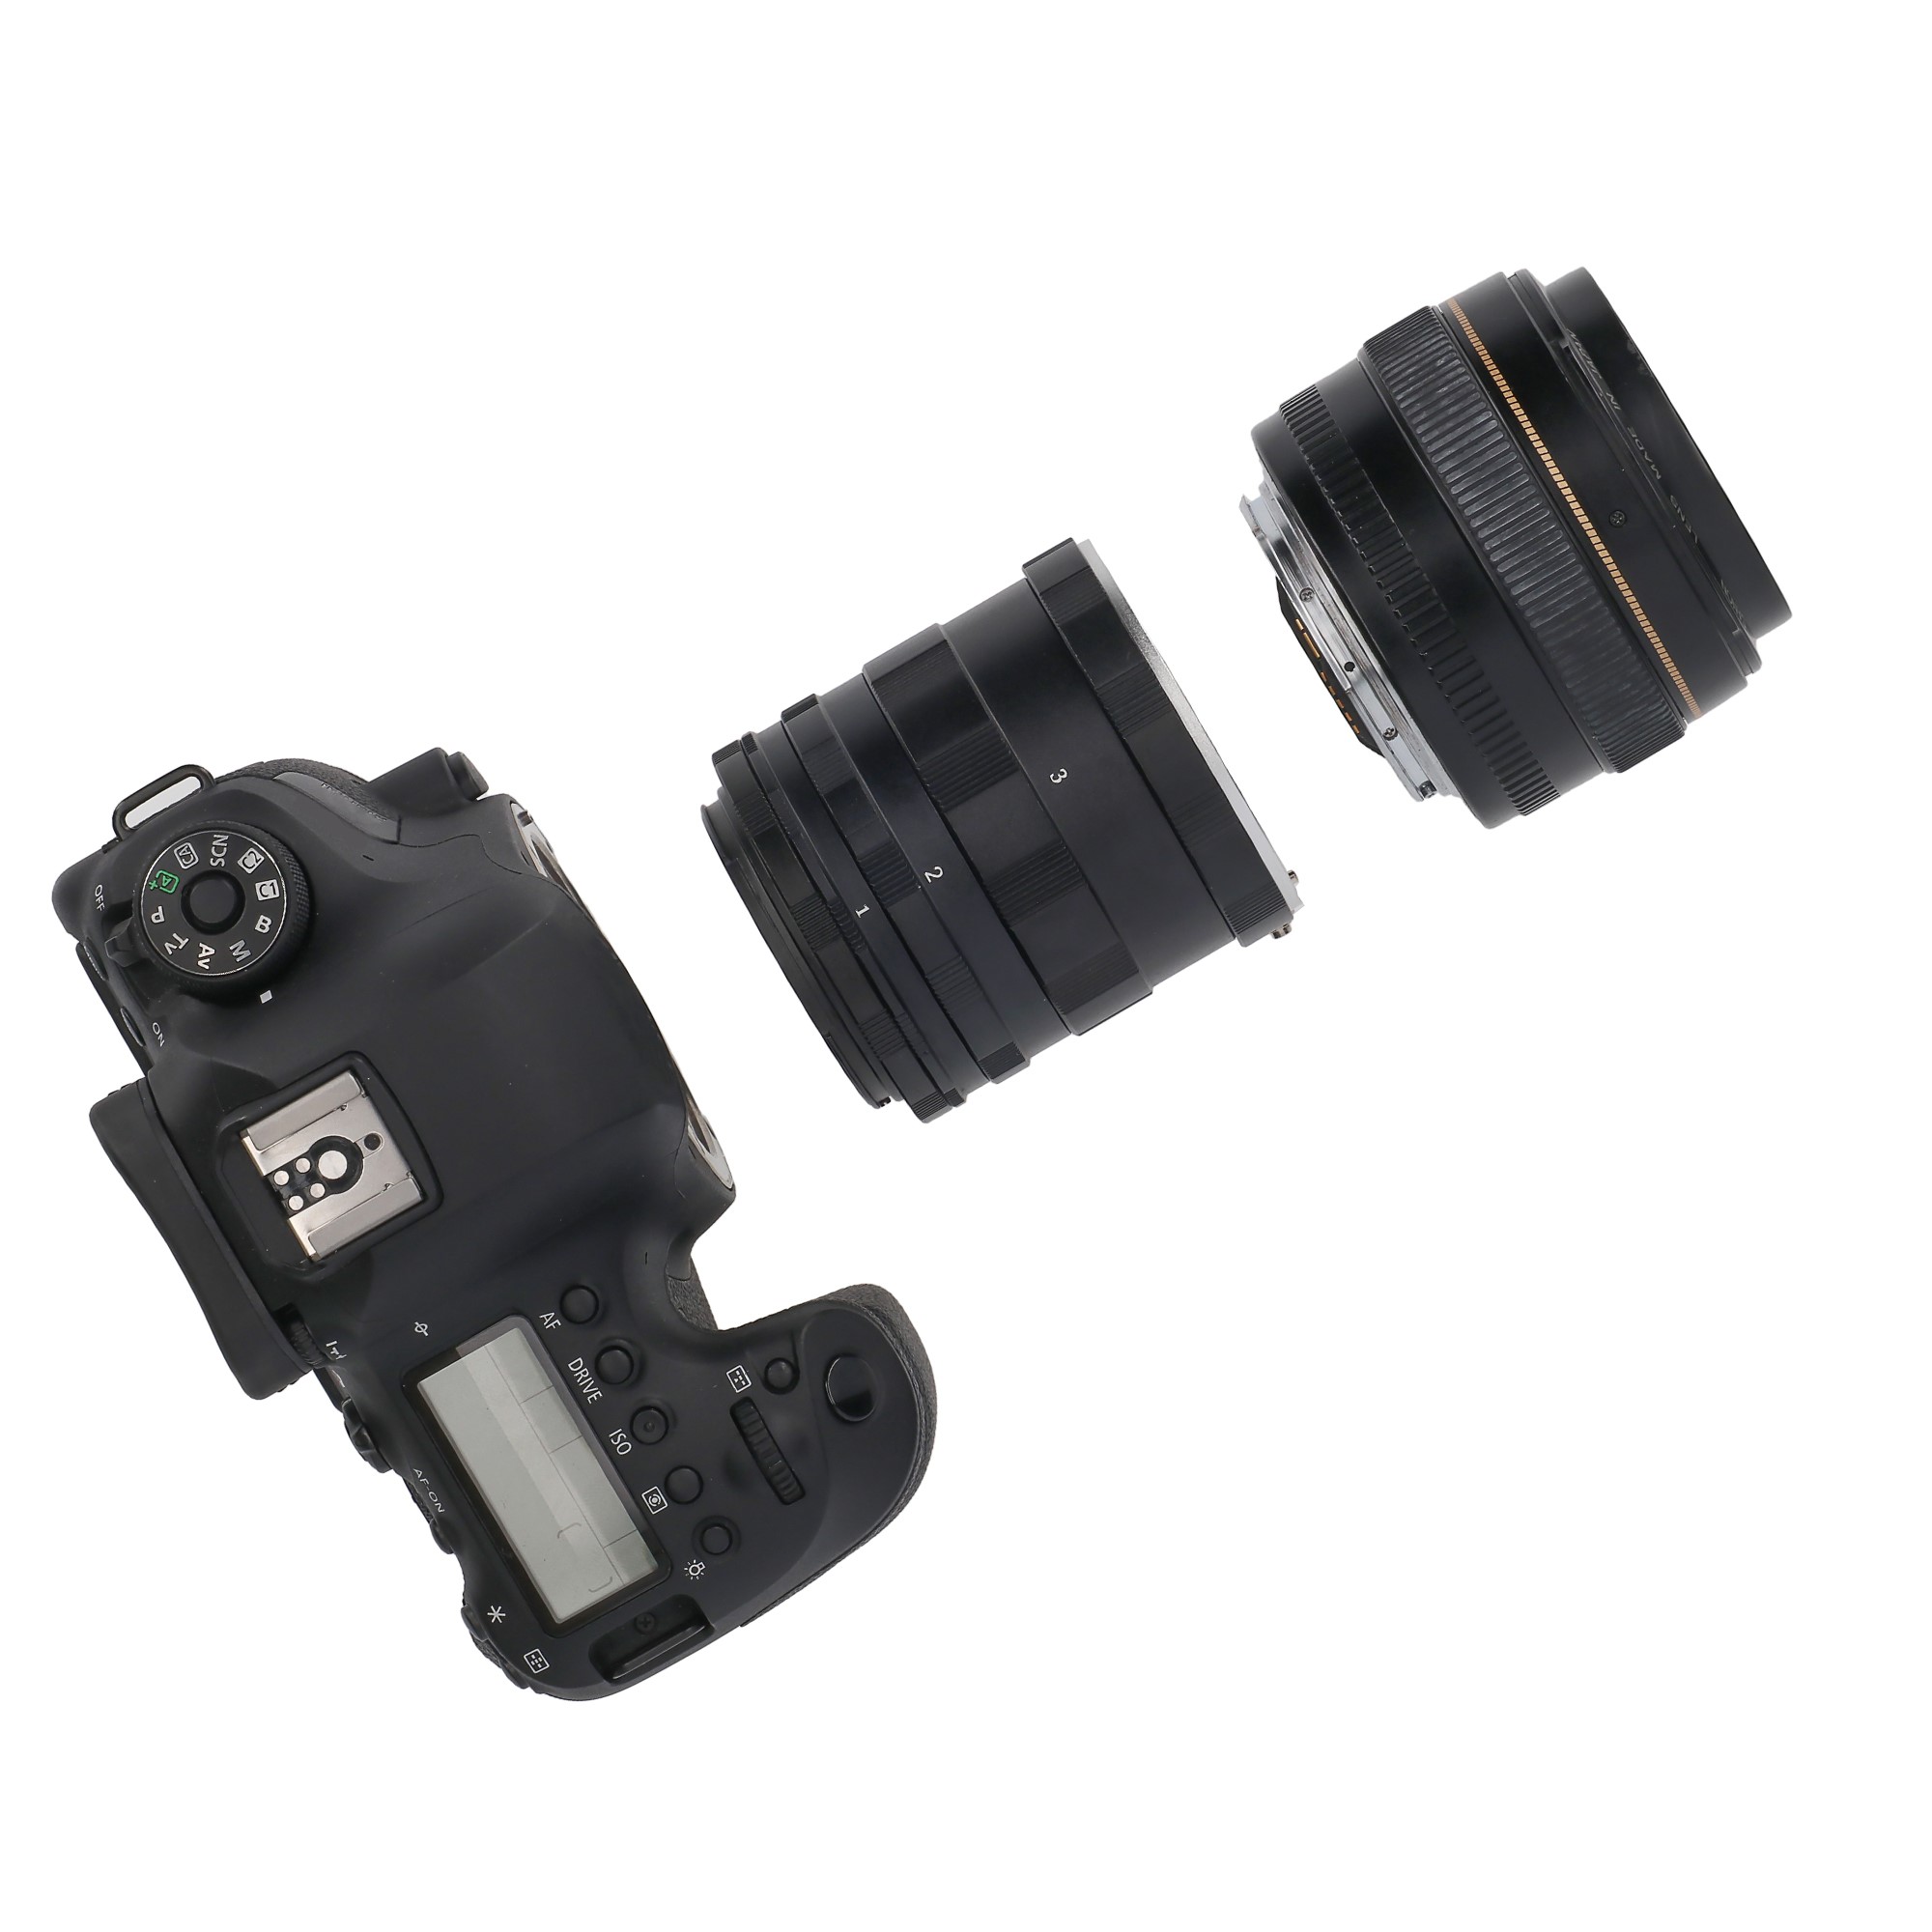 Makro Zwischenringe für Nikon DSLR zB D90 D300 D700 D5000 D3000 viele Brennweiten manuell hochwertig